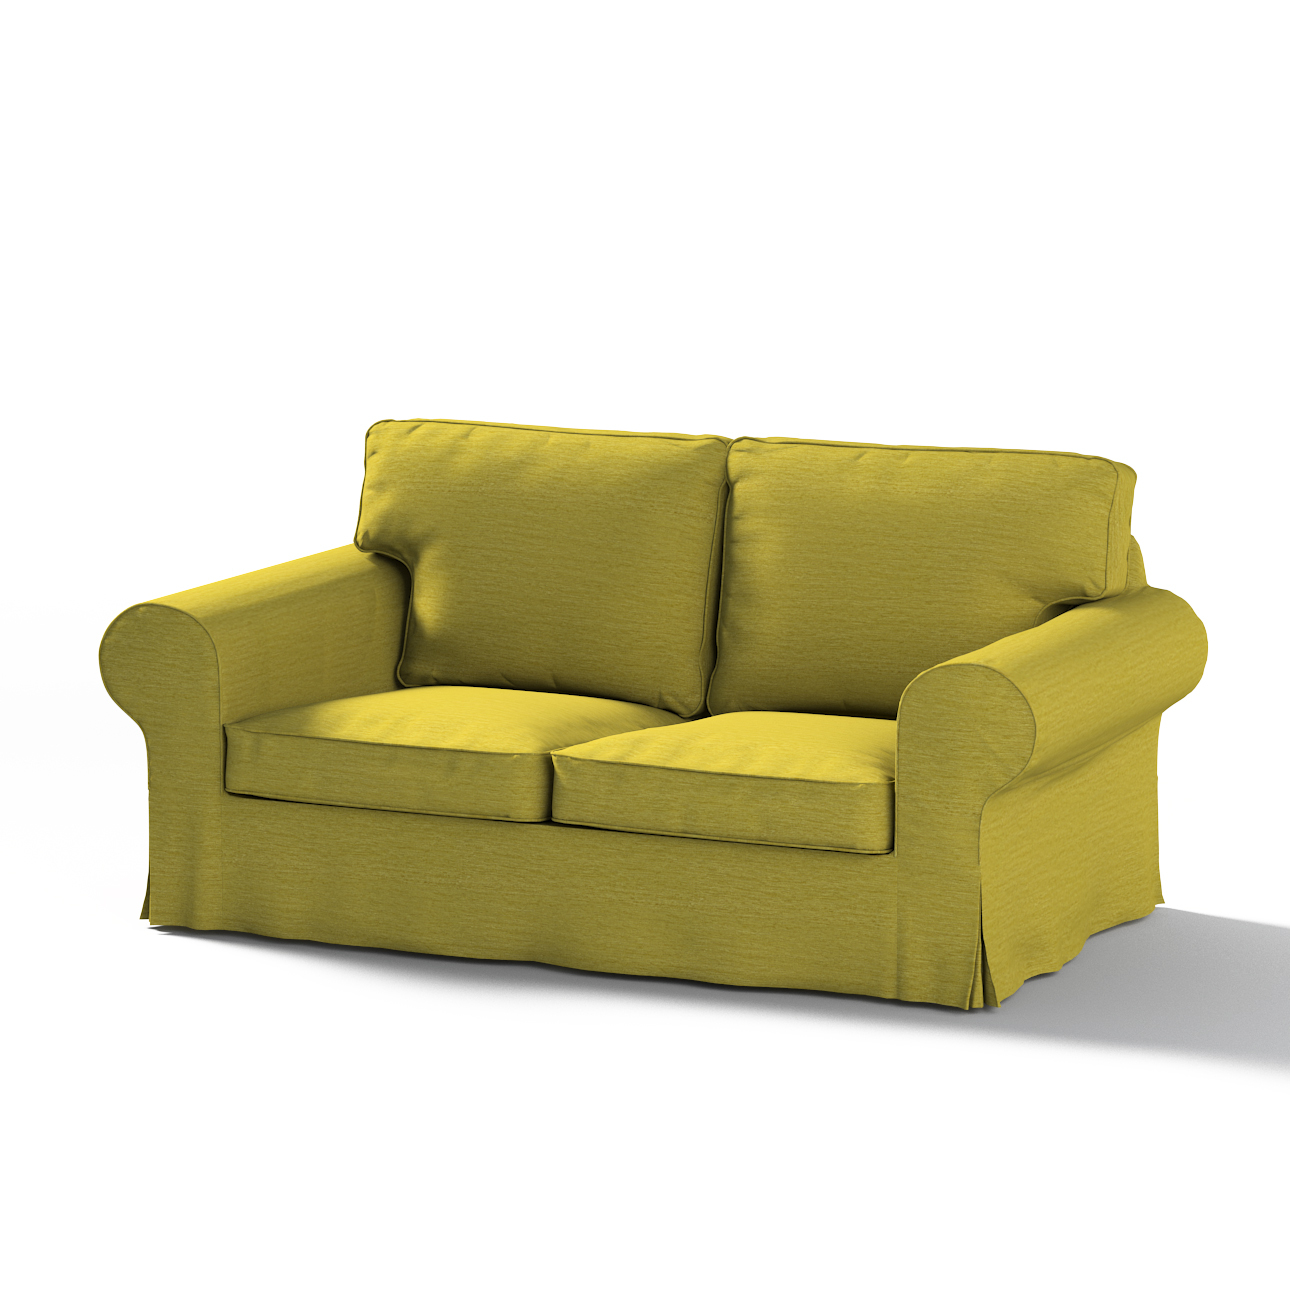 Bezug für Ektorp 2-Sitzer Schlafsofa NEUES Modell, grün, Sofabezug für  Ekt günstig online kaufen